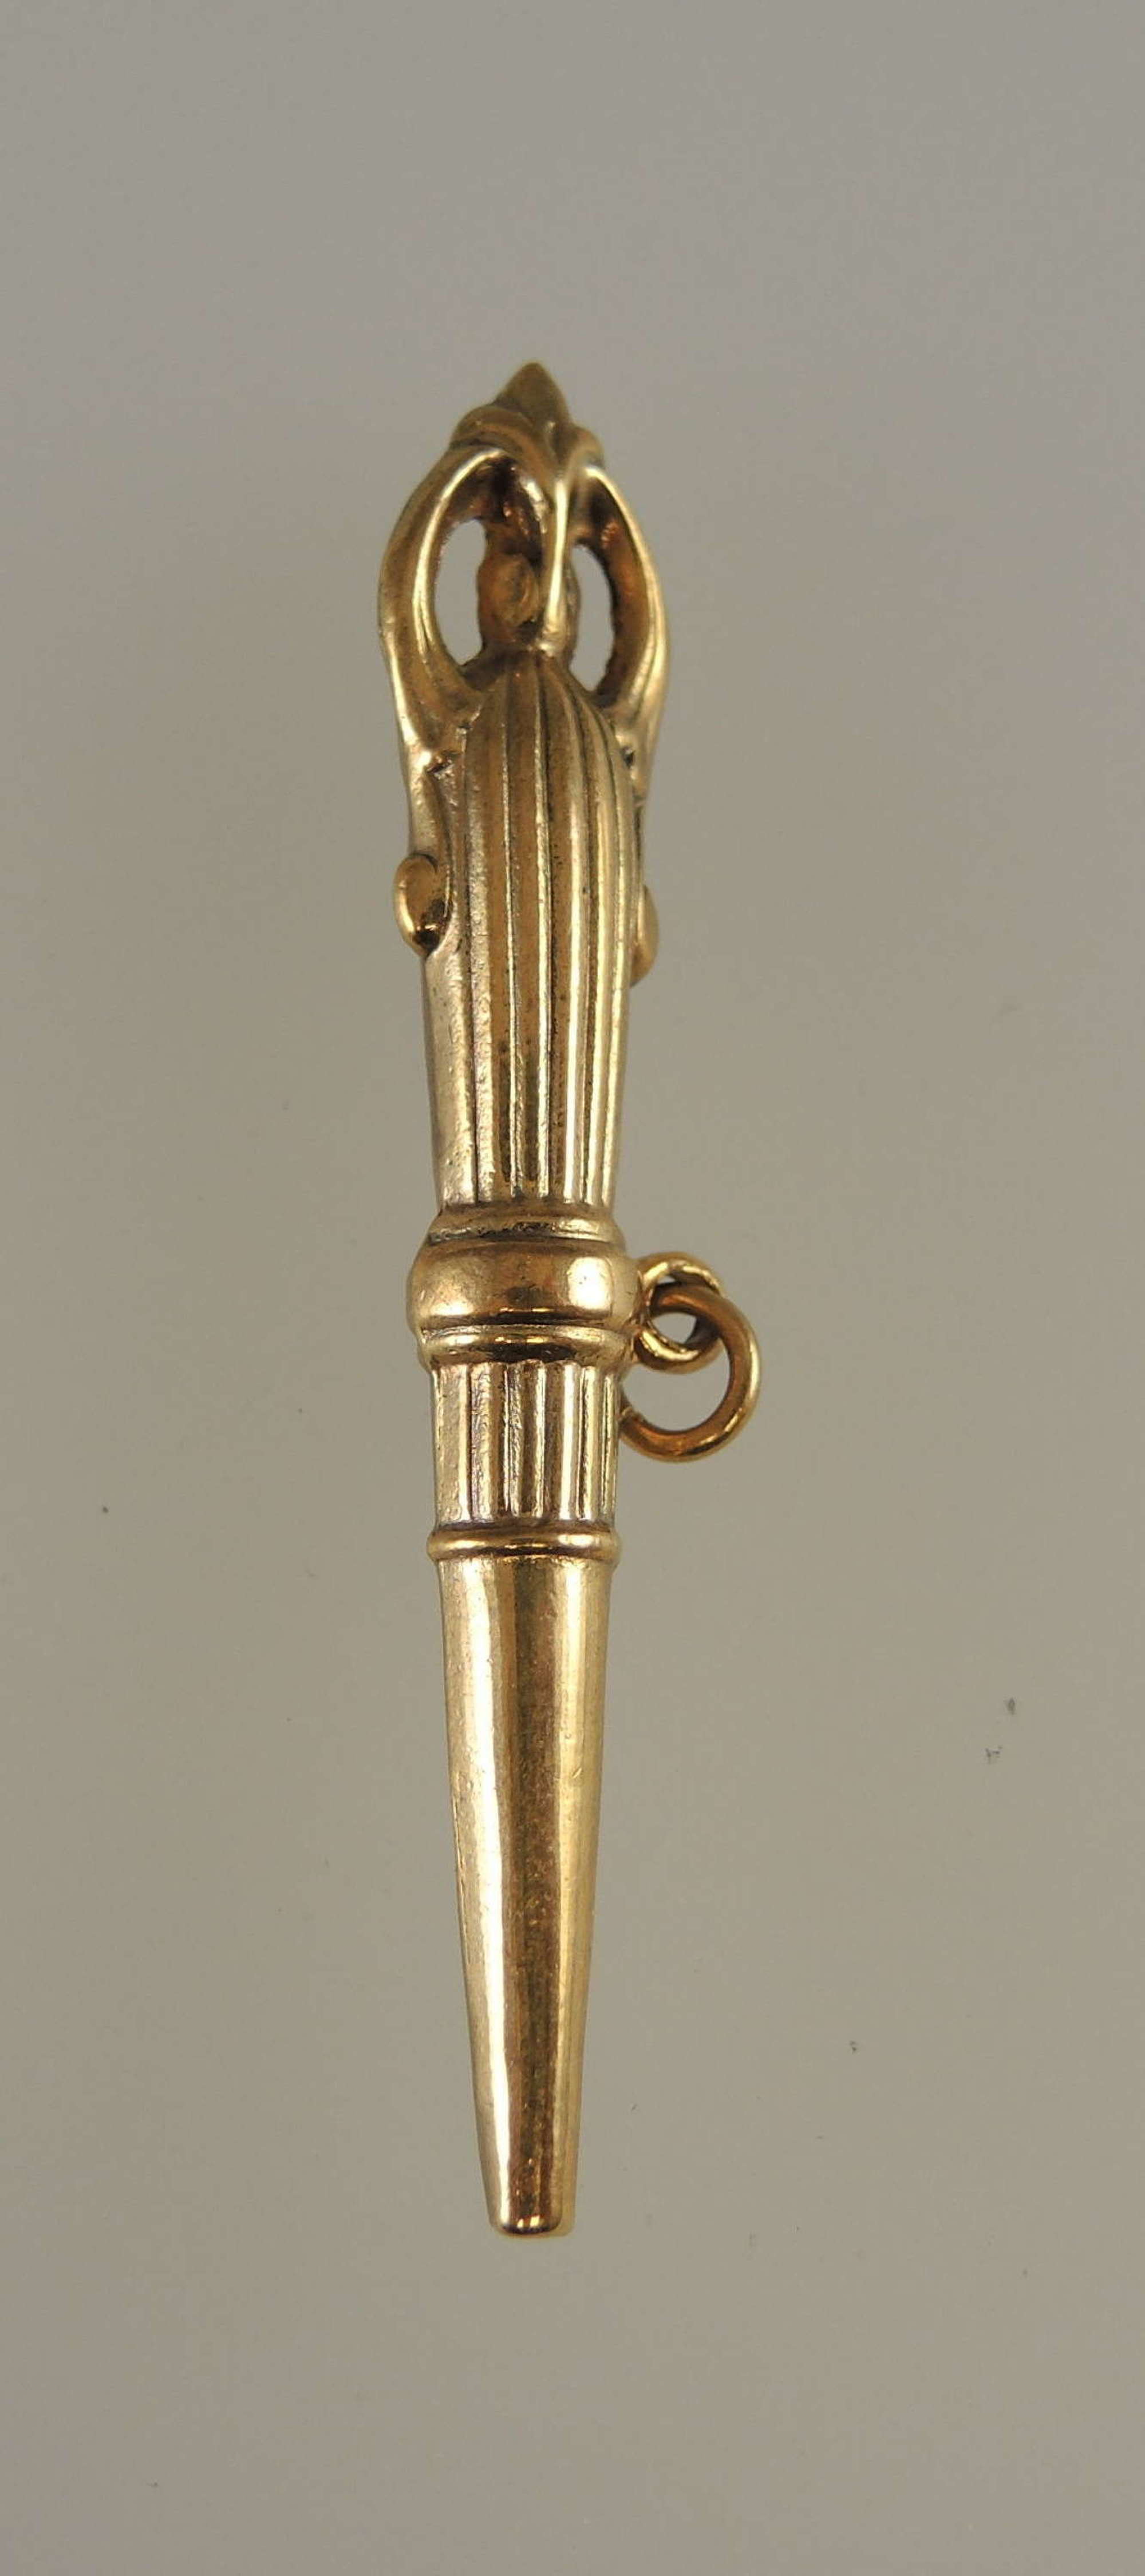 Unusual Gilt TORCH shaped pocket watch key c1850